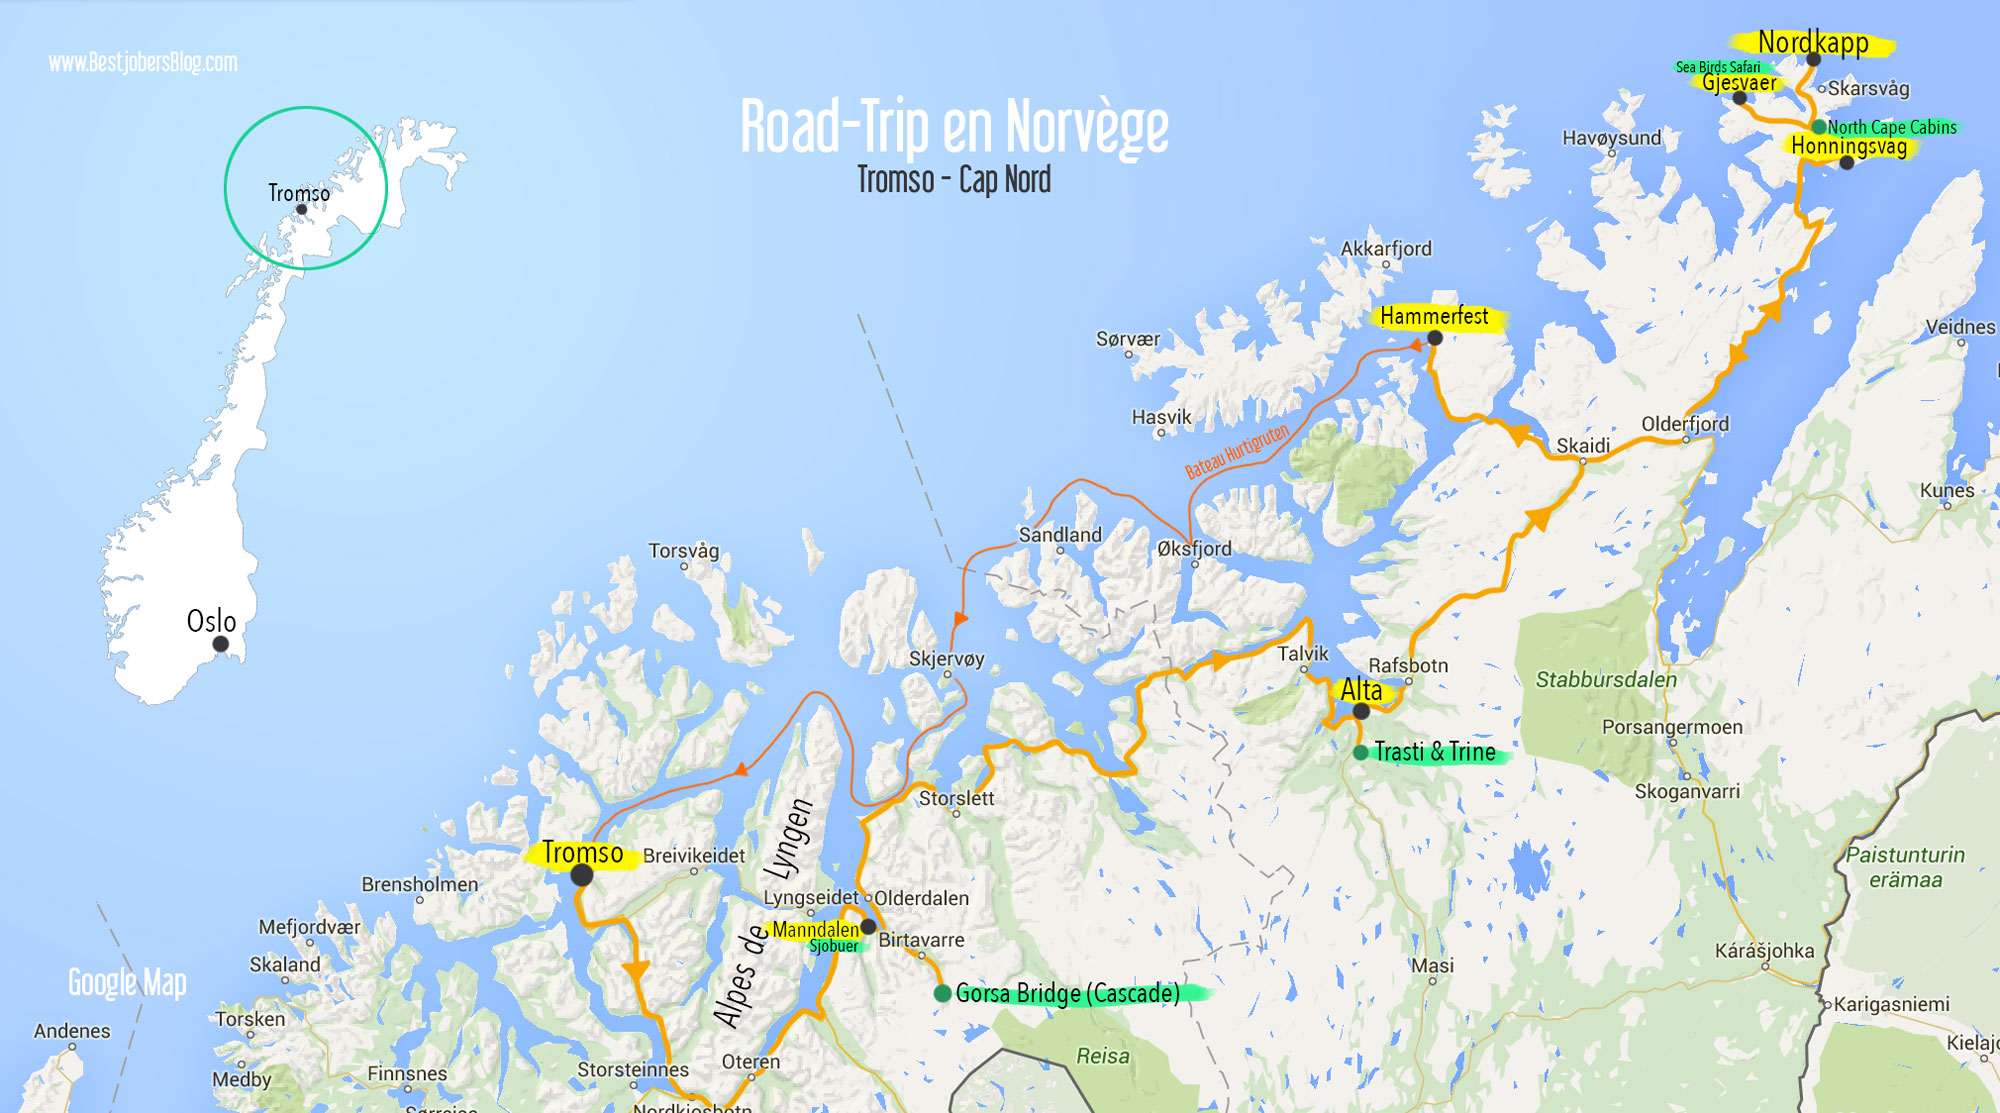 itinéraire road trip norvege carte tromso-cap nord